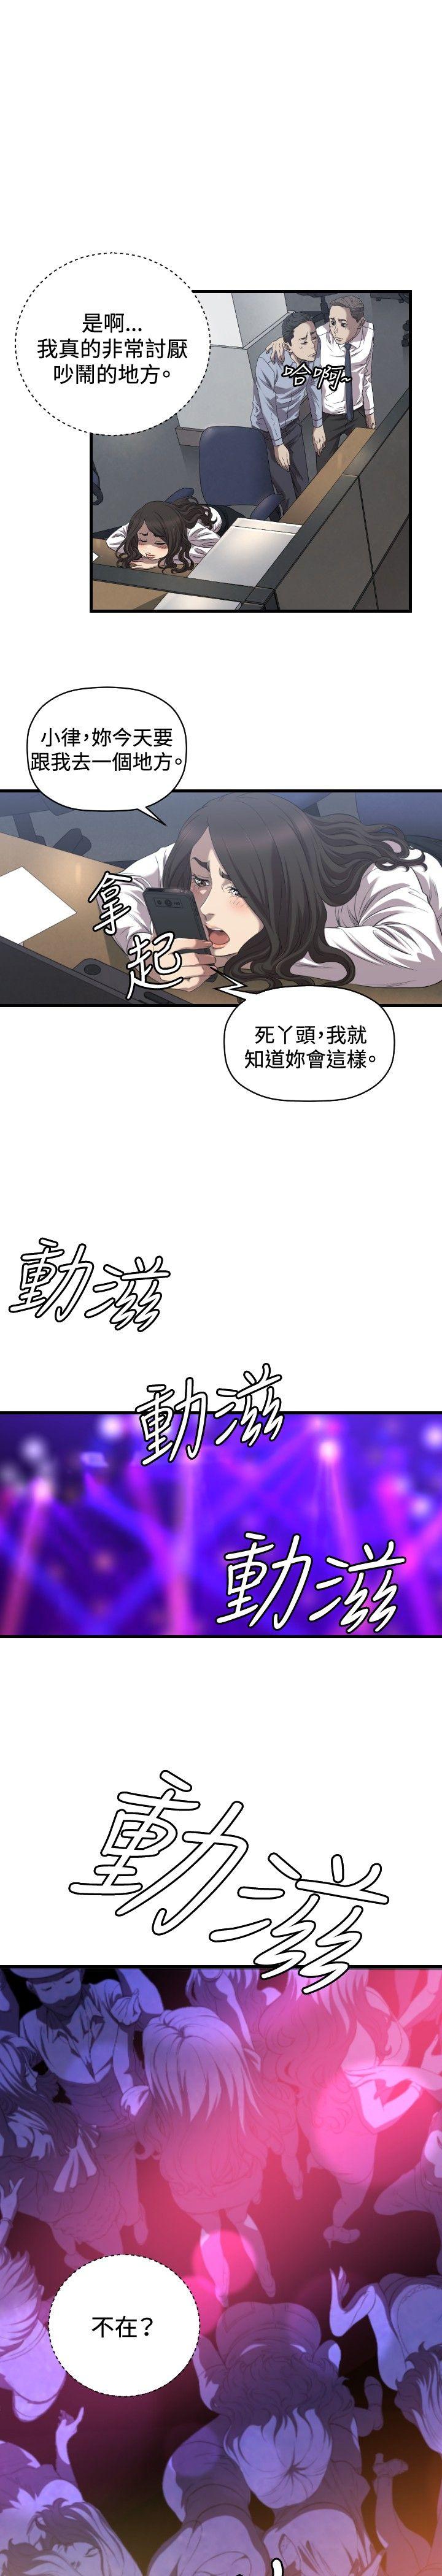 索多玛俱乐部(完结)  最终话 漫画图片4.jpg